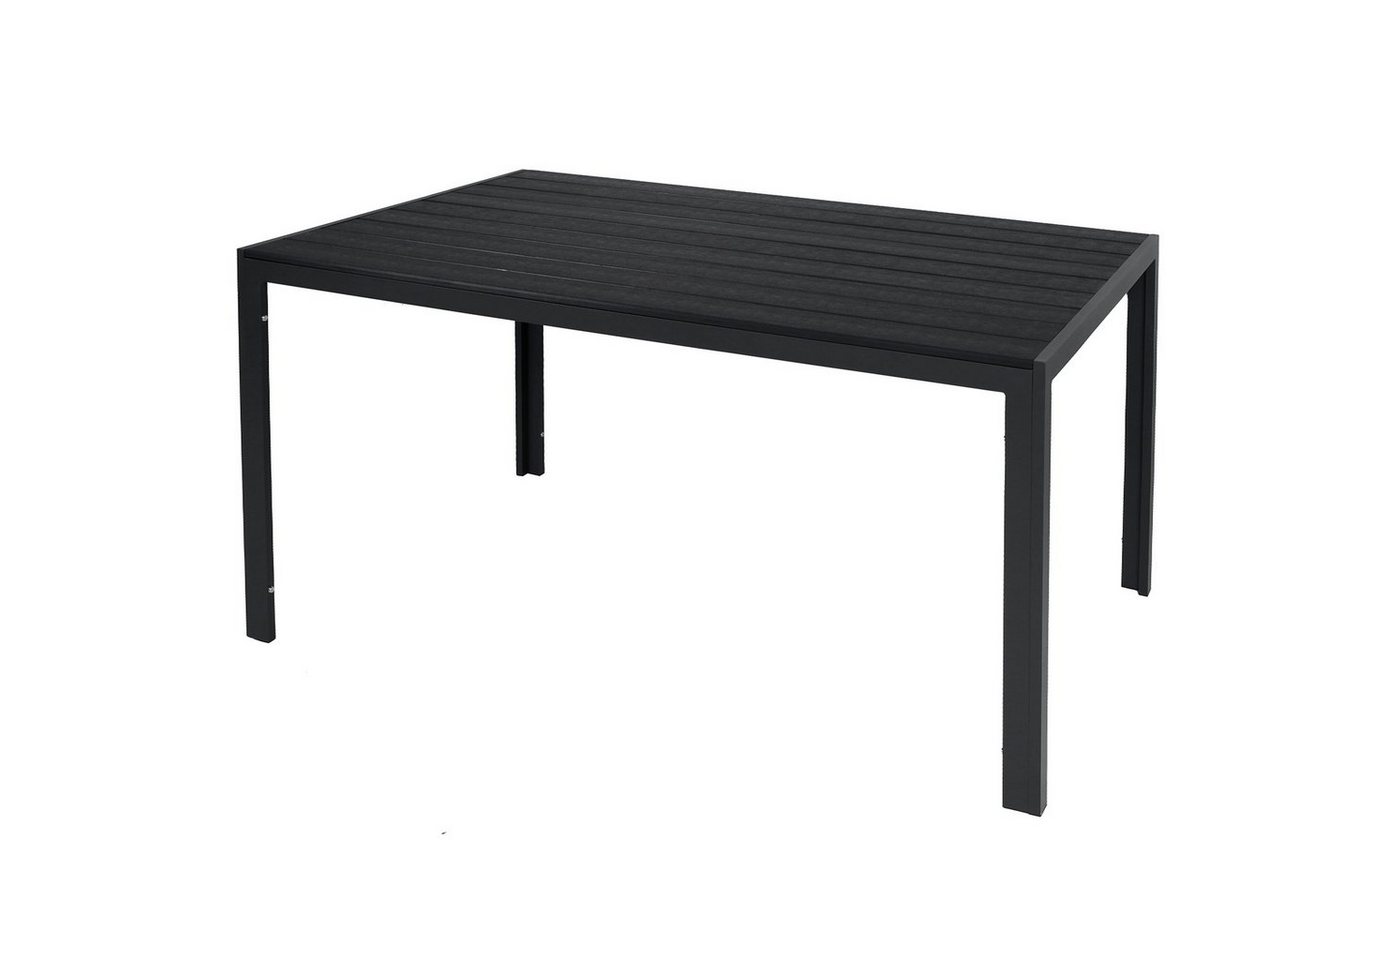 INDA-Exclusiv Küchentisch Non-Wood Aluminium Gartentisch Esstisch anthrazit / schwarz 150x80cm von INDA-Exclusiv